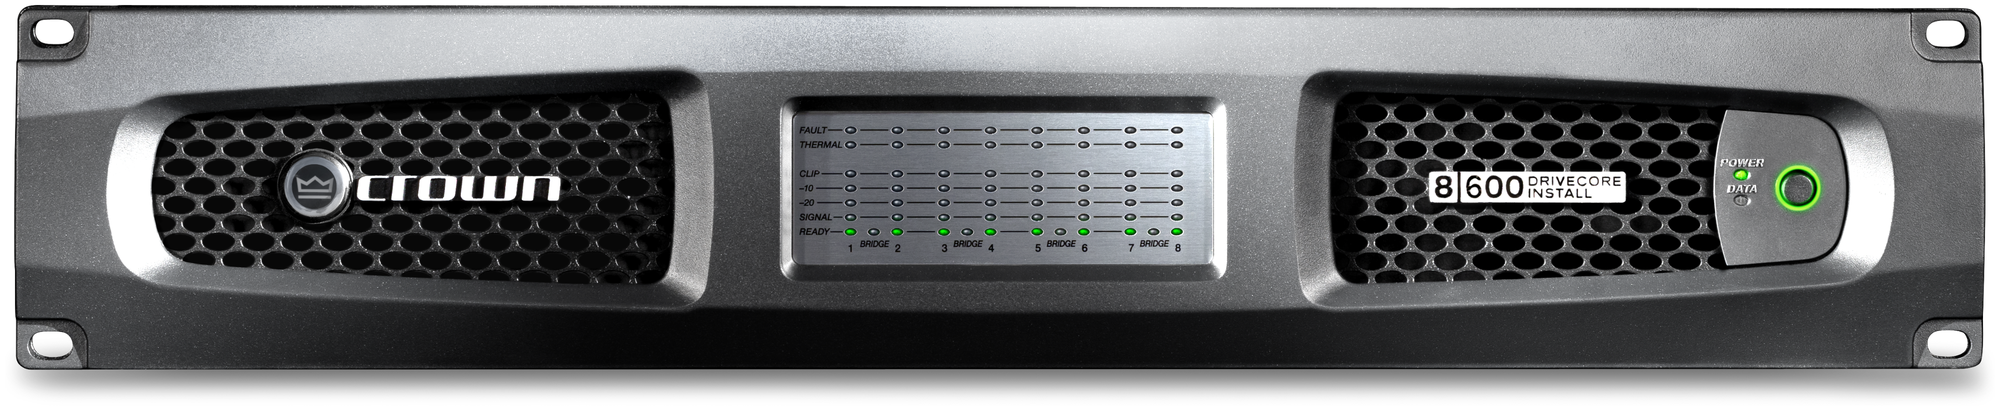 Crown DCi 8|600DA усилитель 8-канальный с интерфейсами Dante™ / AES67, Мощность (на канал): 300Вт•2